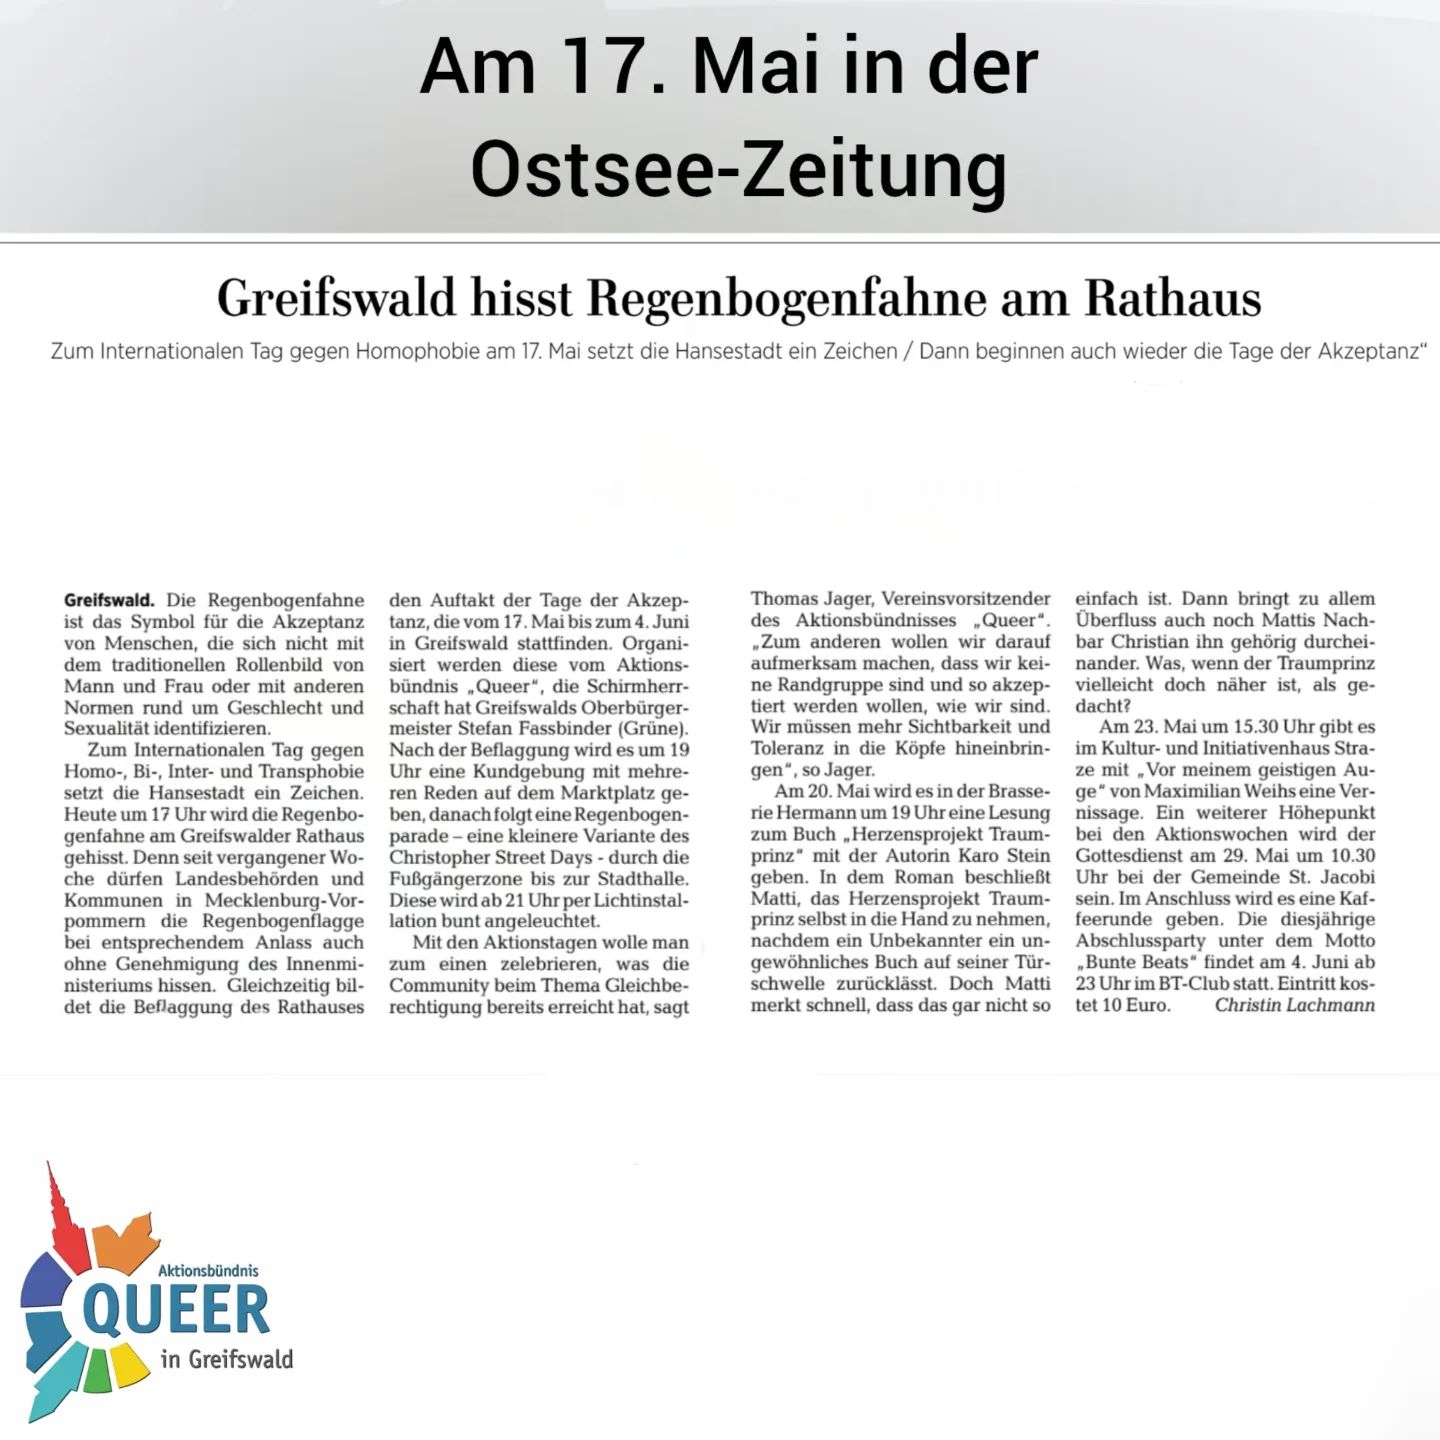 ❤️🧡💛💚💙💜
Tage der Akzeptanz - internationaler Tag gegen Queerfeindlichkeit

Heute wurde ein Artikel in der @ostsee_zeitung veröffentlicht, in dem nochmal auf die Tage der Akzeptanz hingewiesen wurde. Auch unser Vorstandsvorsitzender Thomas konnte ein paar Worte äußern und ein klares Zeichen für mehr Akzeptanz in der Gesellschaft setzen.

#queer #queermv #queer_hgw #queerinmv
#pride #csd #csddeutschland #csdnord #lsvd 
#gay #lesbisch #schwul #bi #trans #inter #andersabernormal 
#tda #Tagederakzeptanz #tda2022 #idahobit #idaq